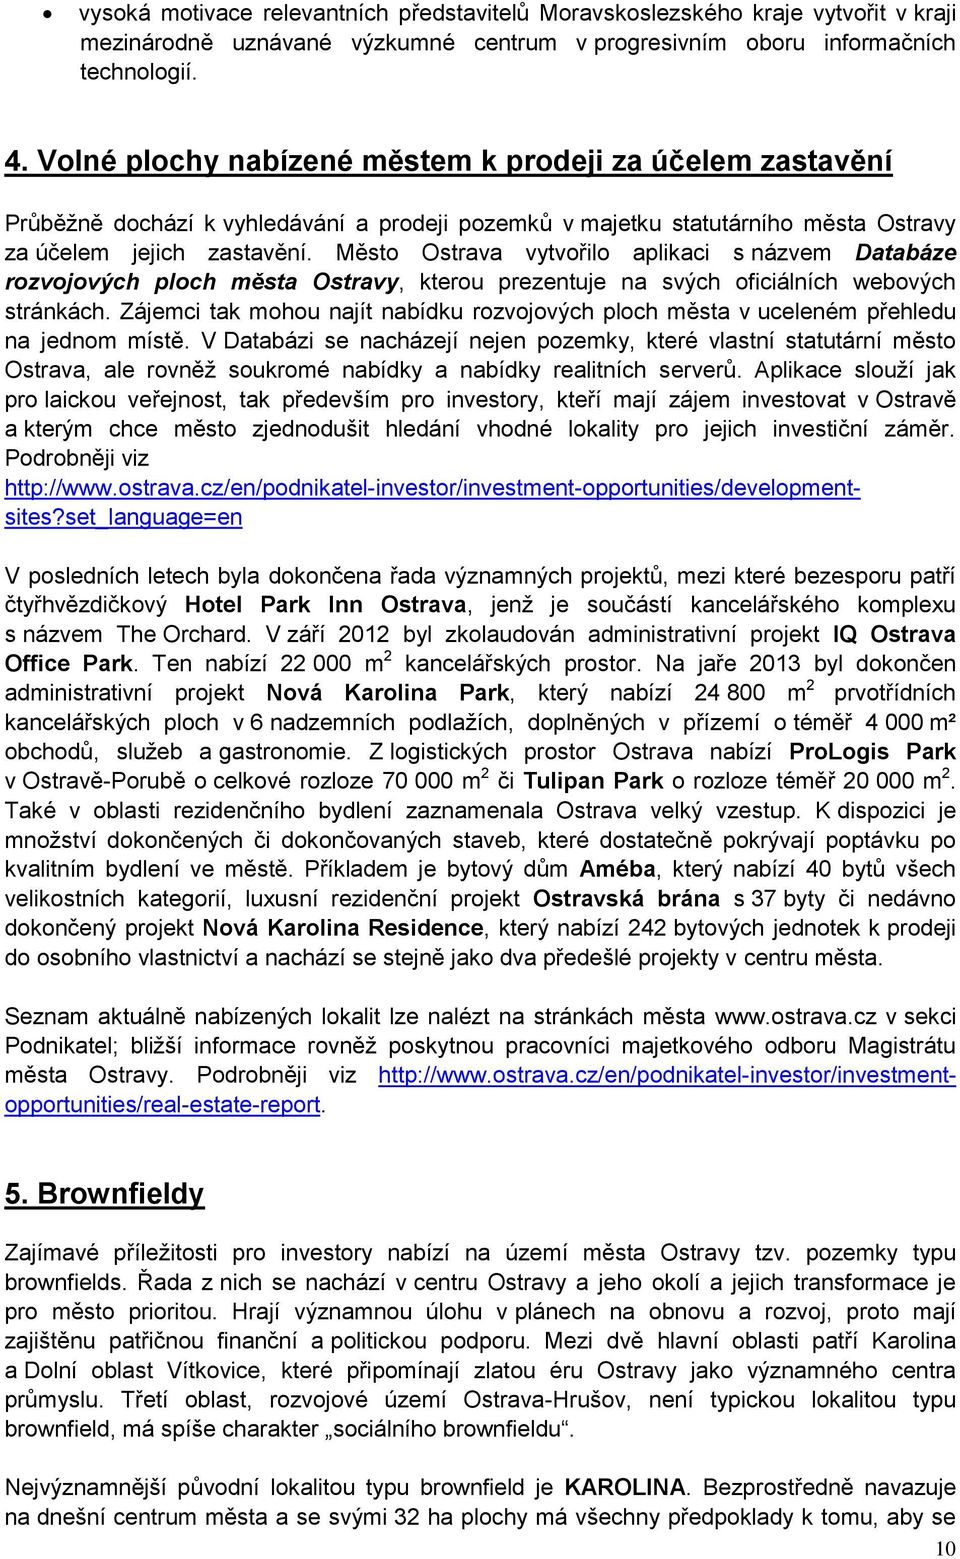 Město Ostrava vytvořilo aplikaci s názvem Databáze rozvojových ploch města Ostravy, kterou prezentuje na svých oficiálních webových stránkách.